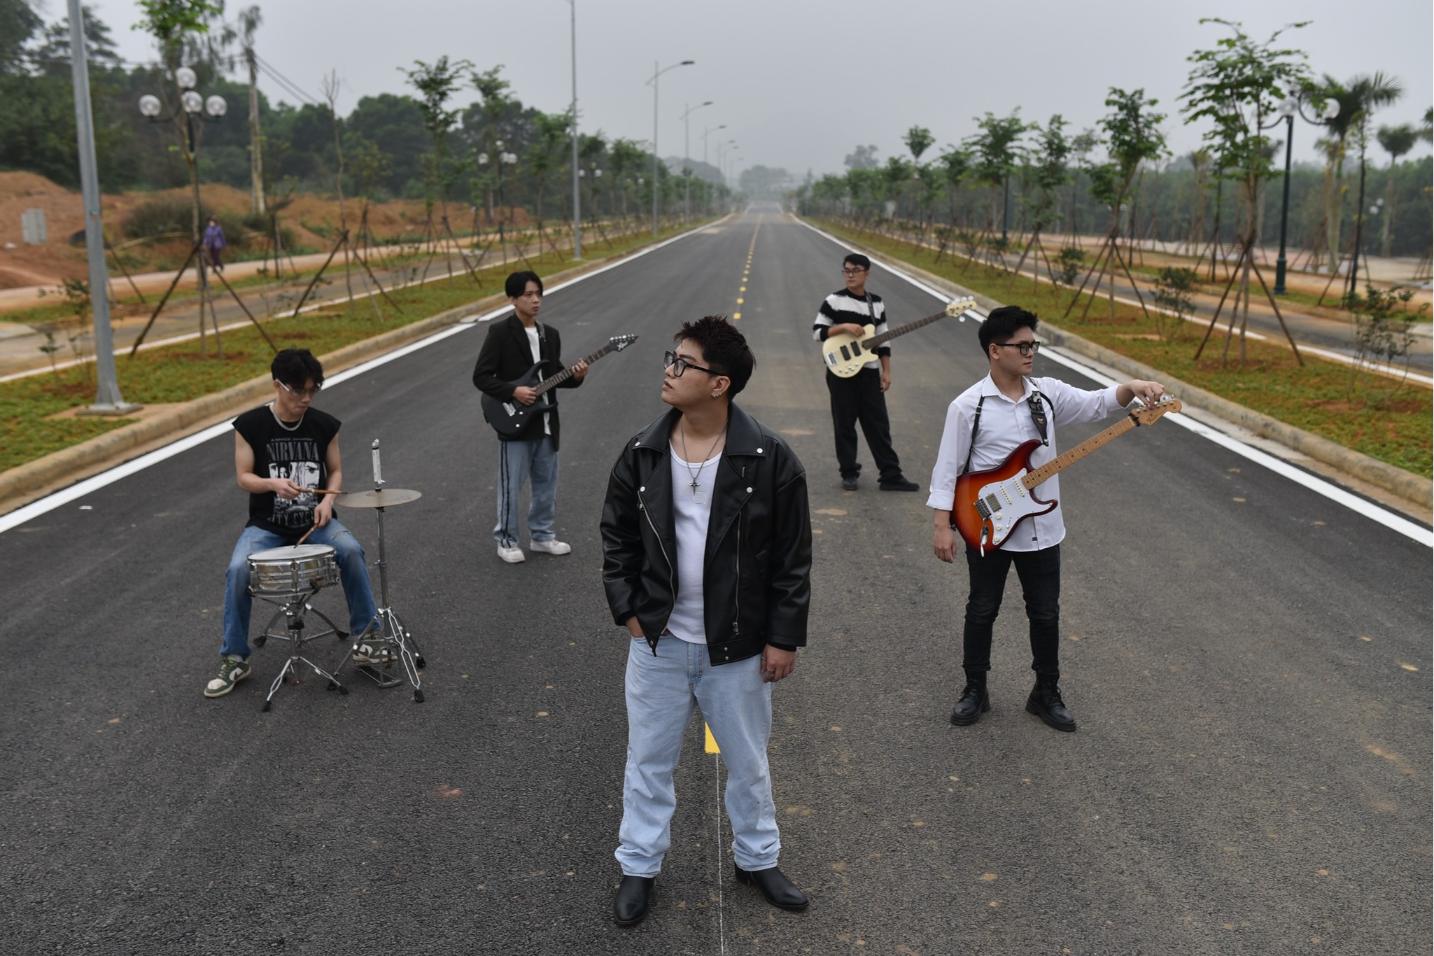 502 Ocean 3 Điểm mặt những band nhạc mới nổi bật “mỗi người một vẻ” của giới Indie Việt